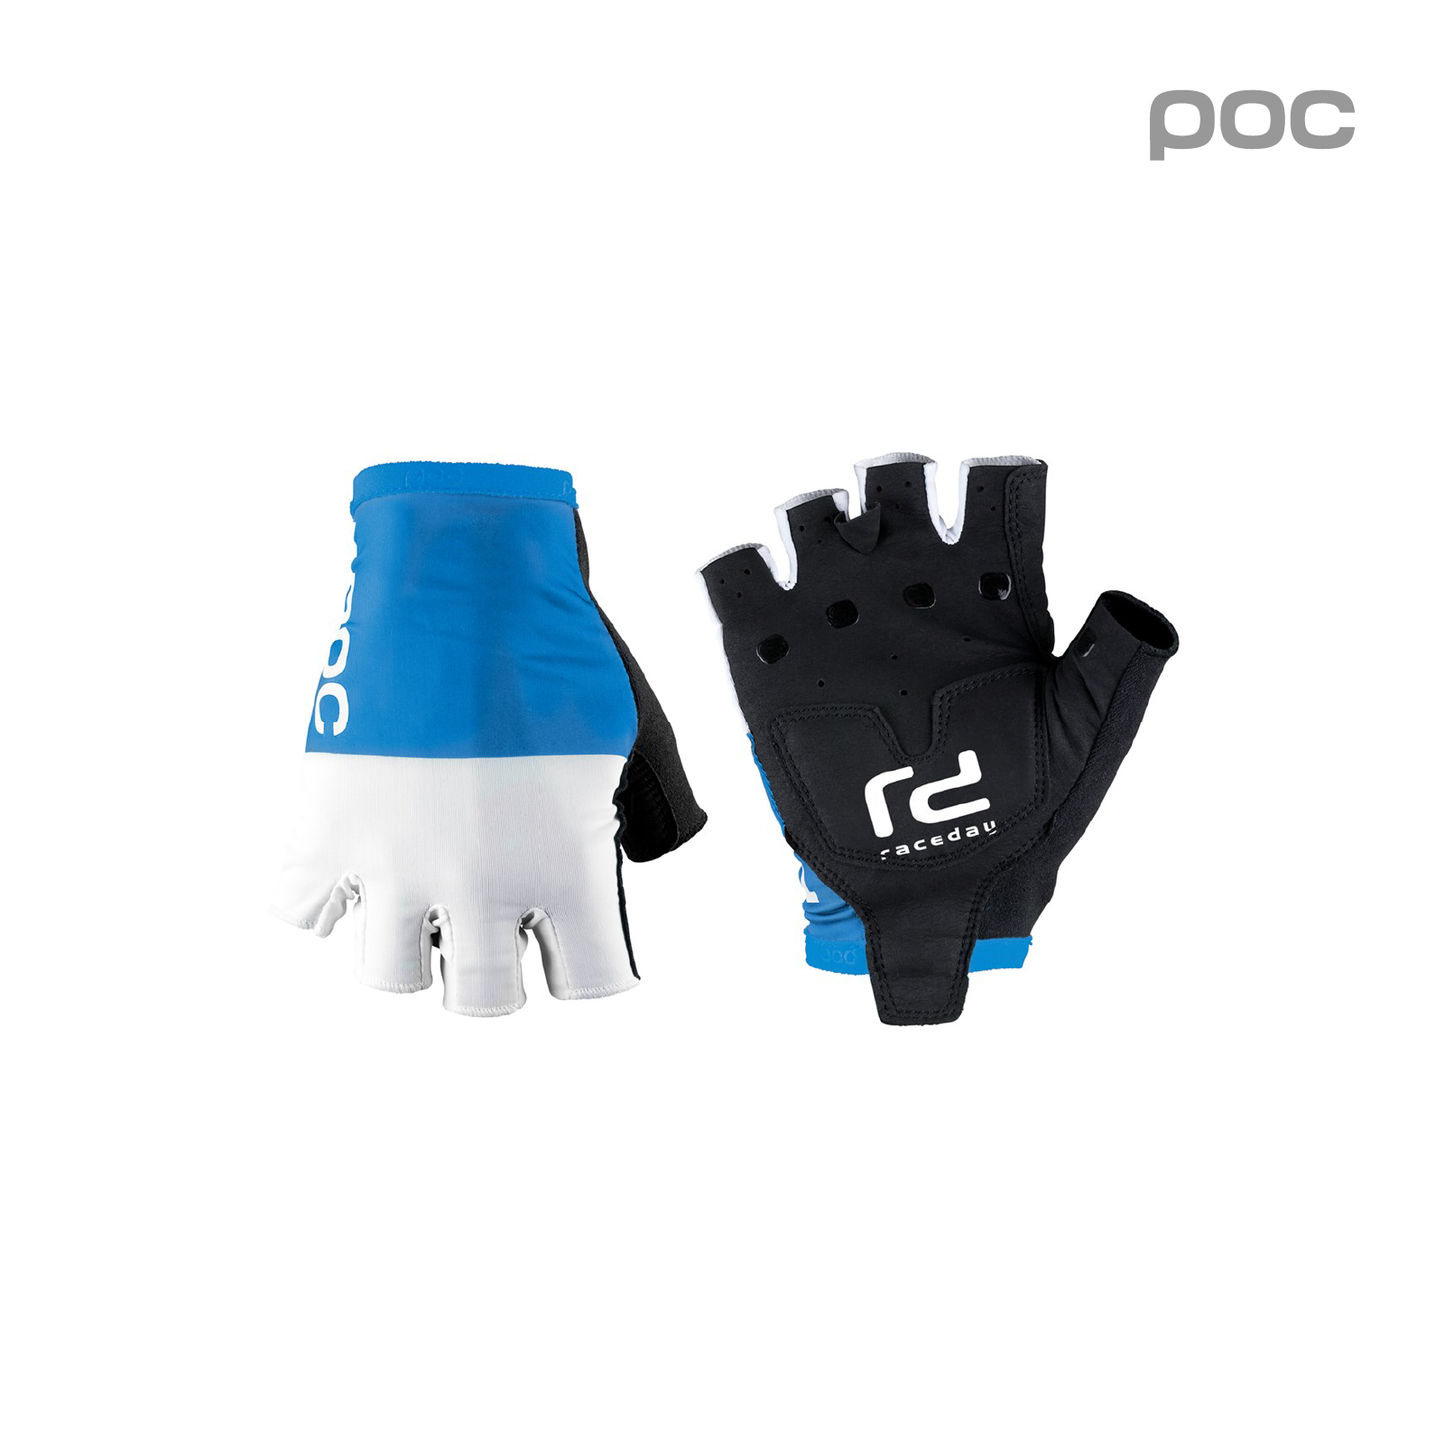 Raceday Gloves Garminum Blue/ Hydrogen White